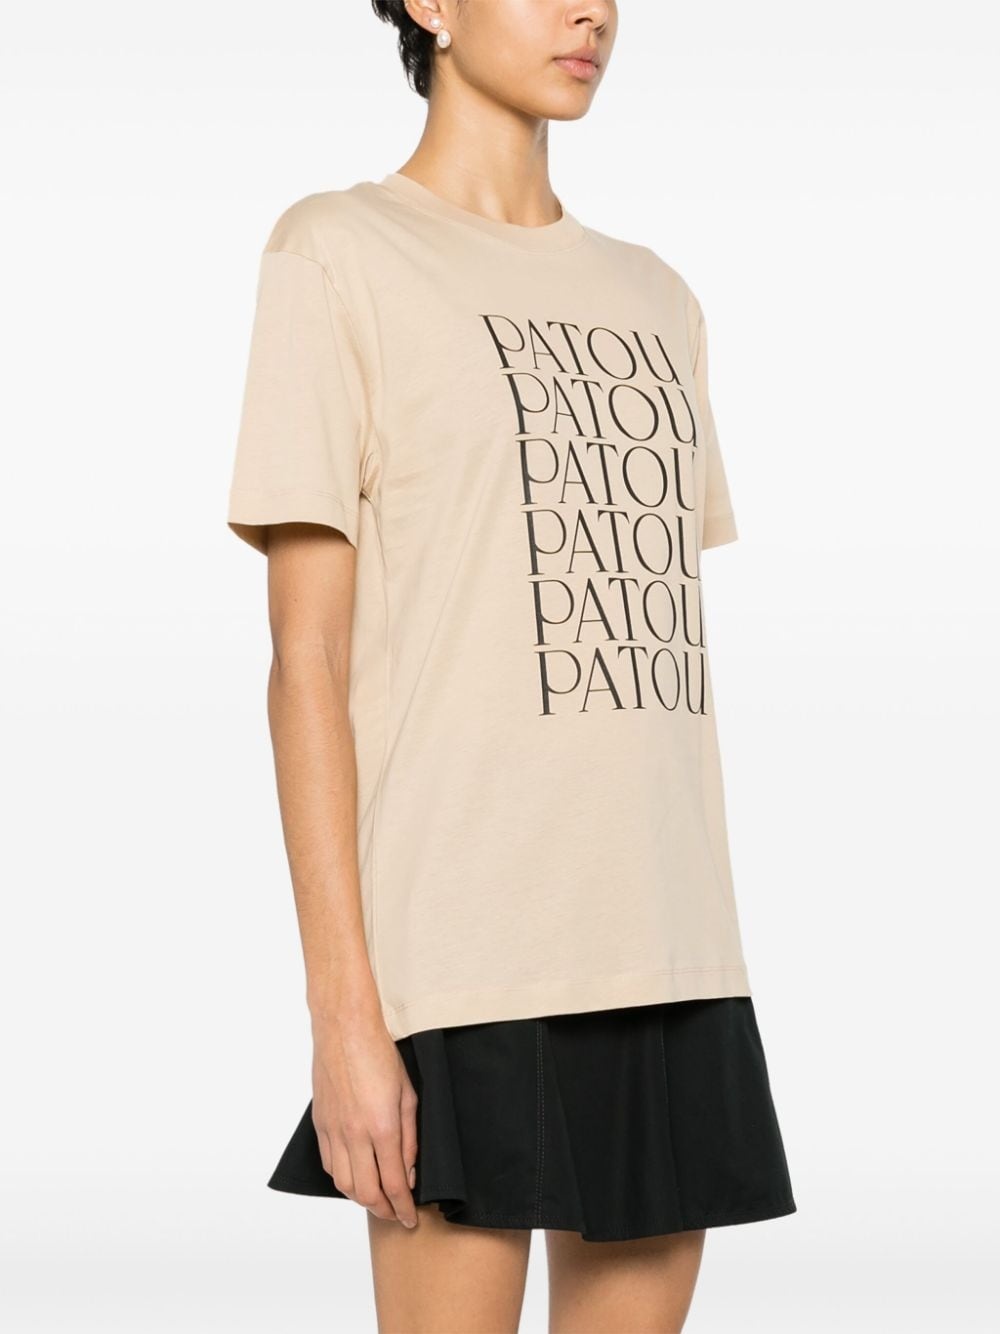 Patou Patou cotton T-shirt - 3